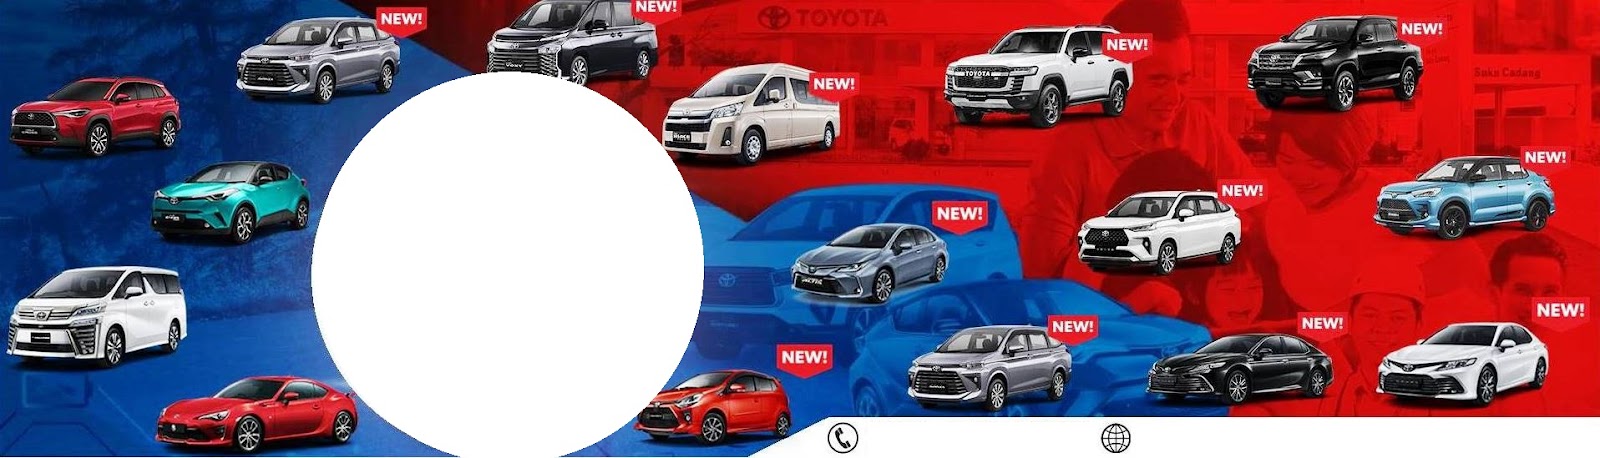 Harga Toyota Pekanbaru